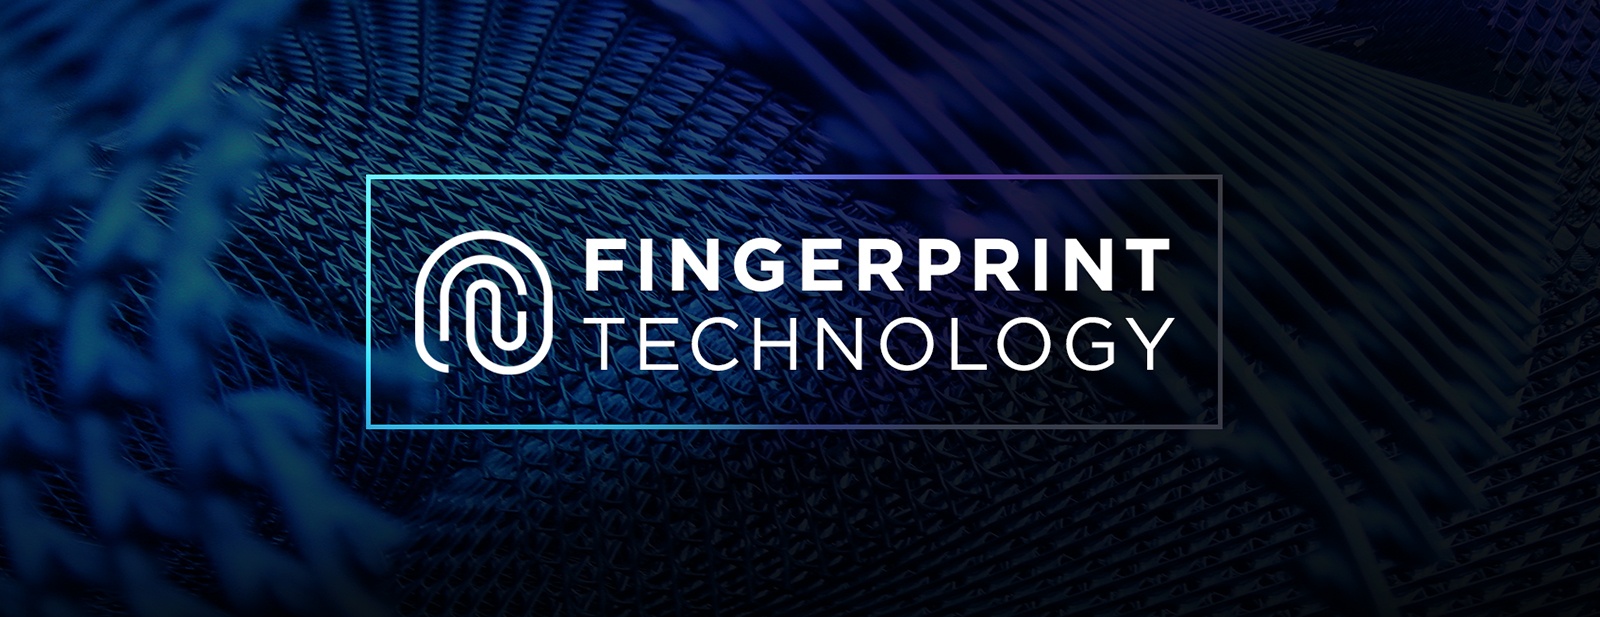 Technology Fingerprint